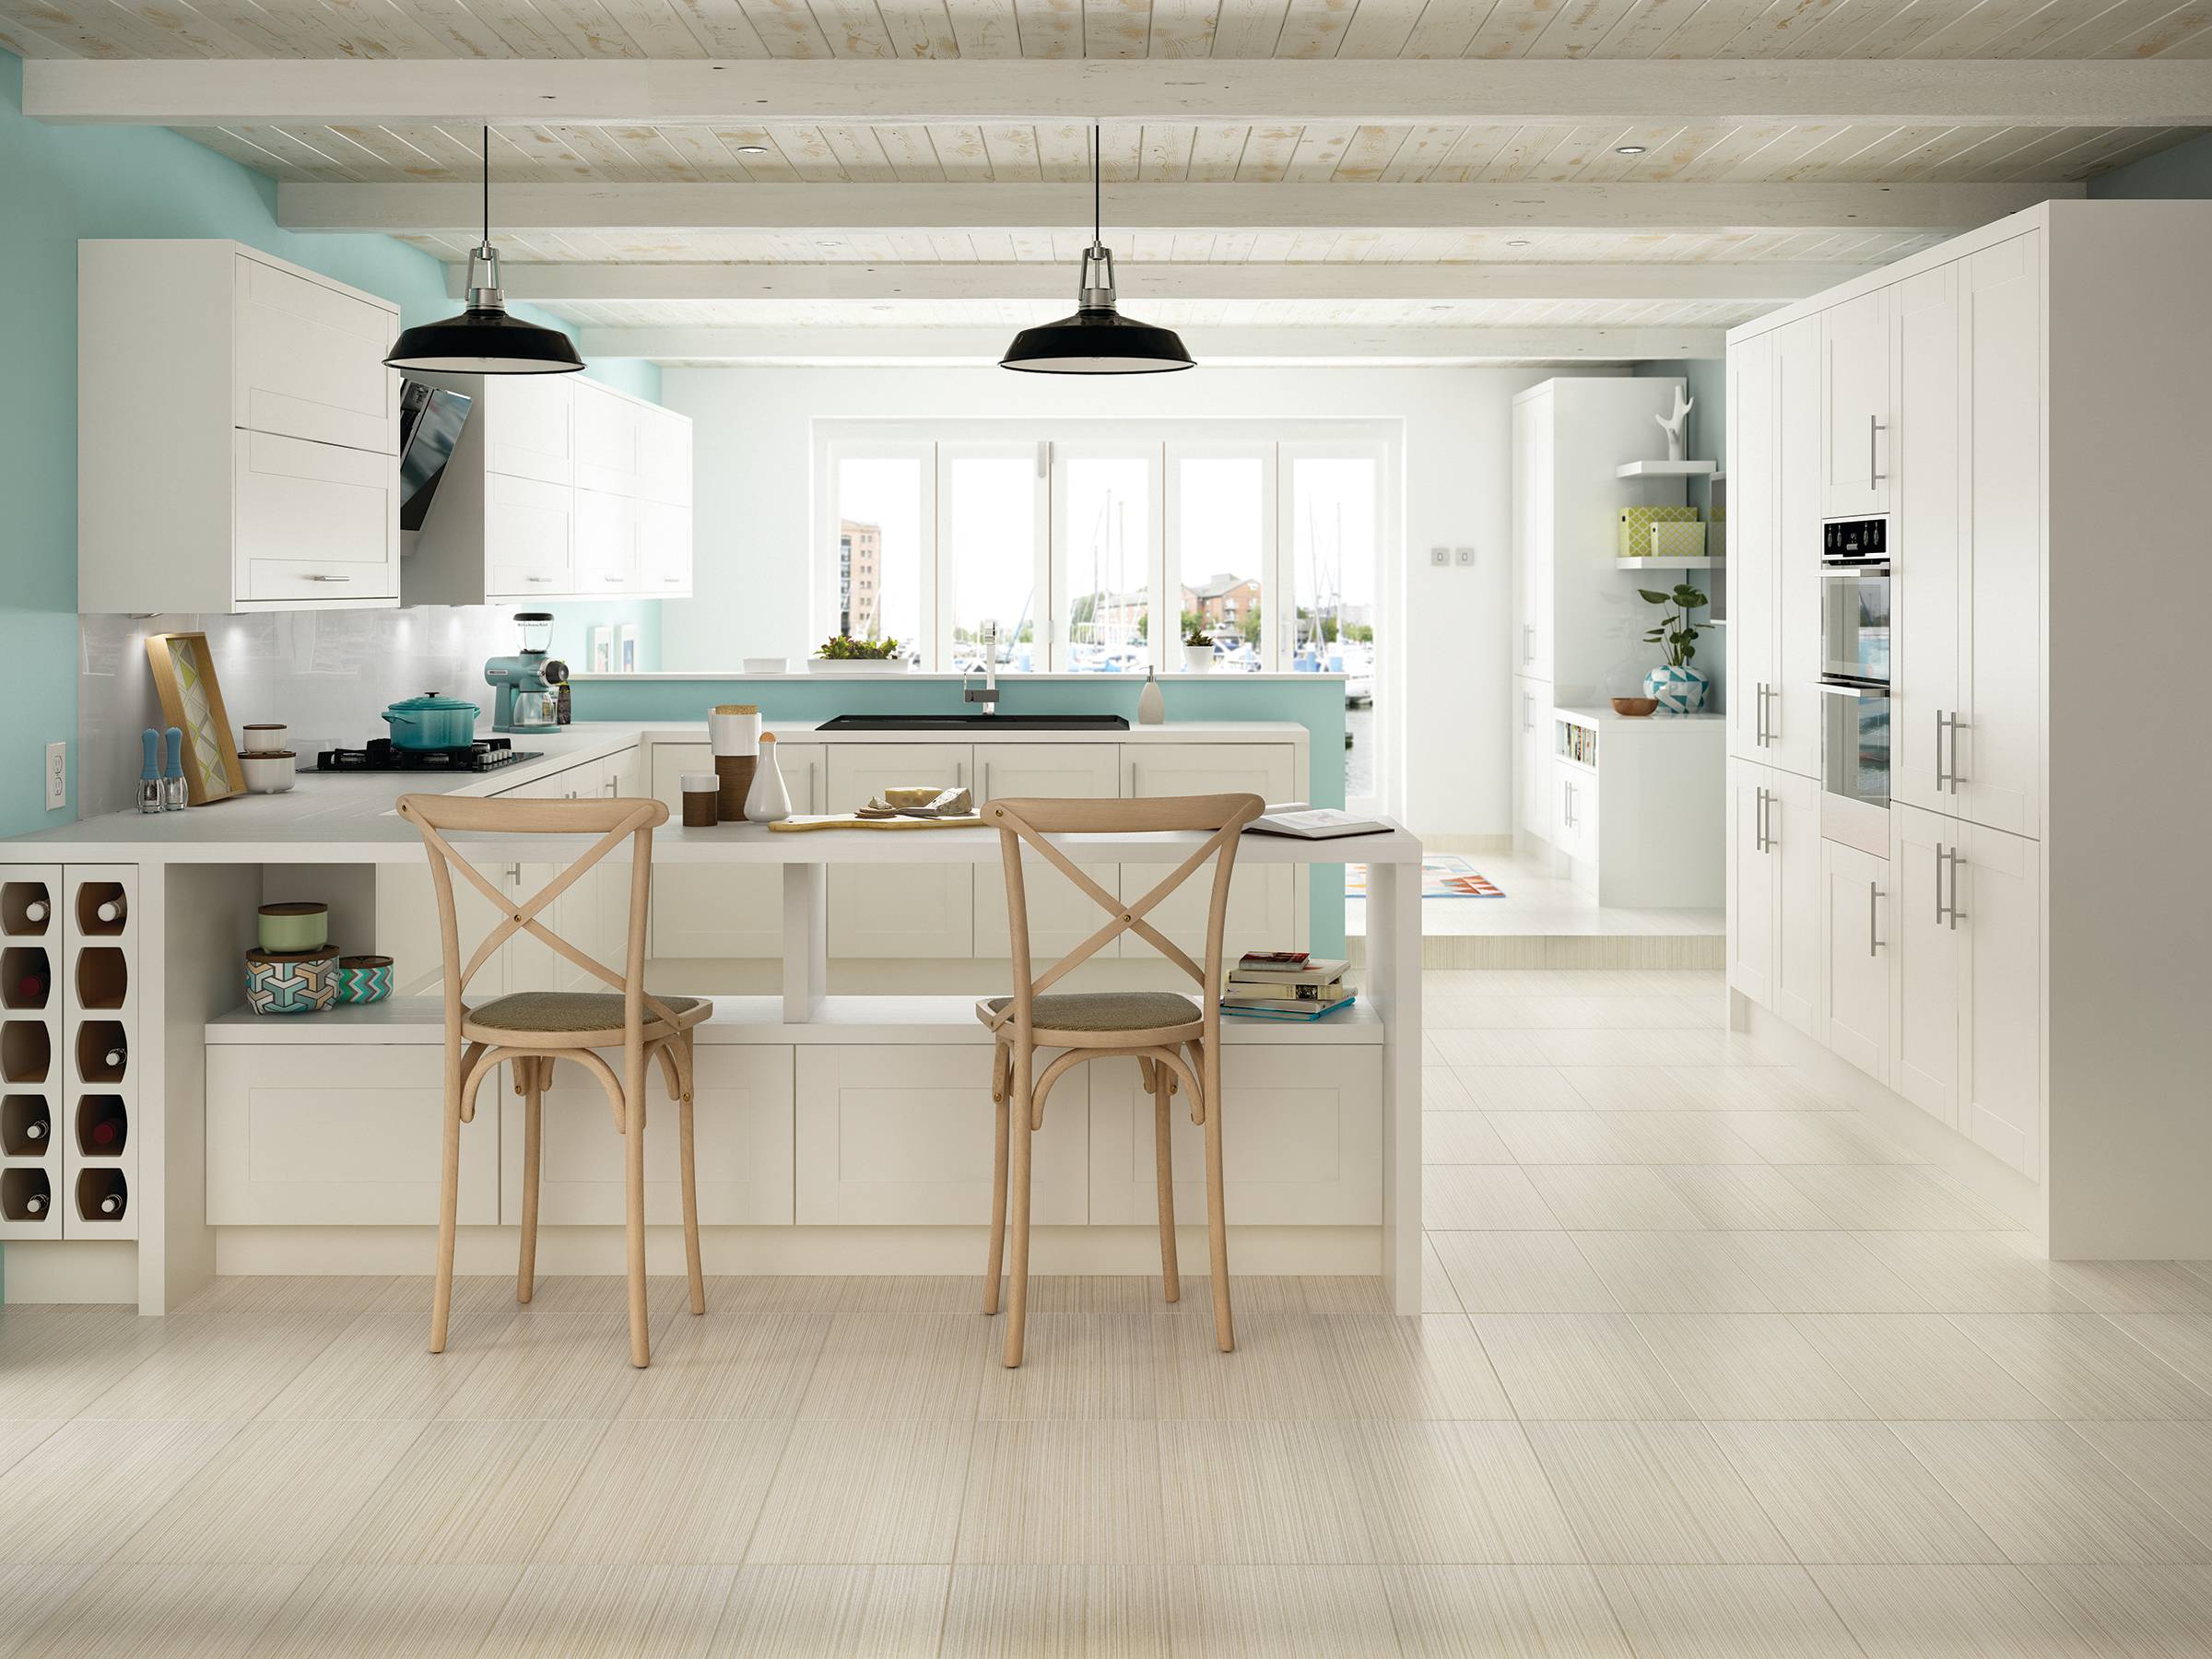 12 X 24 Floor Tile Kitchen Ideas, Kitchen Floor Tile Patterns 12×24